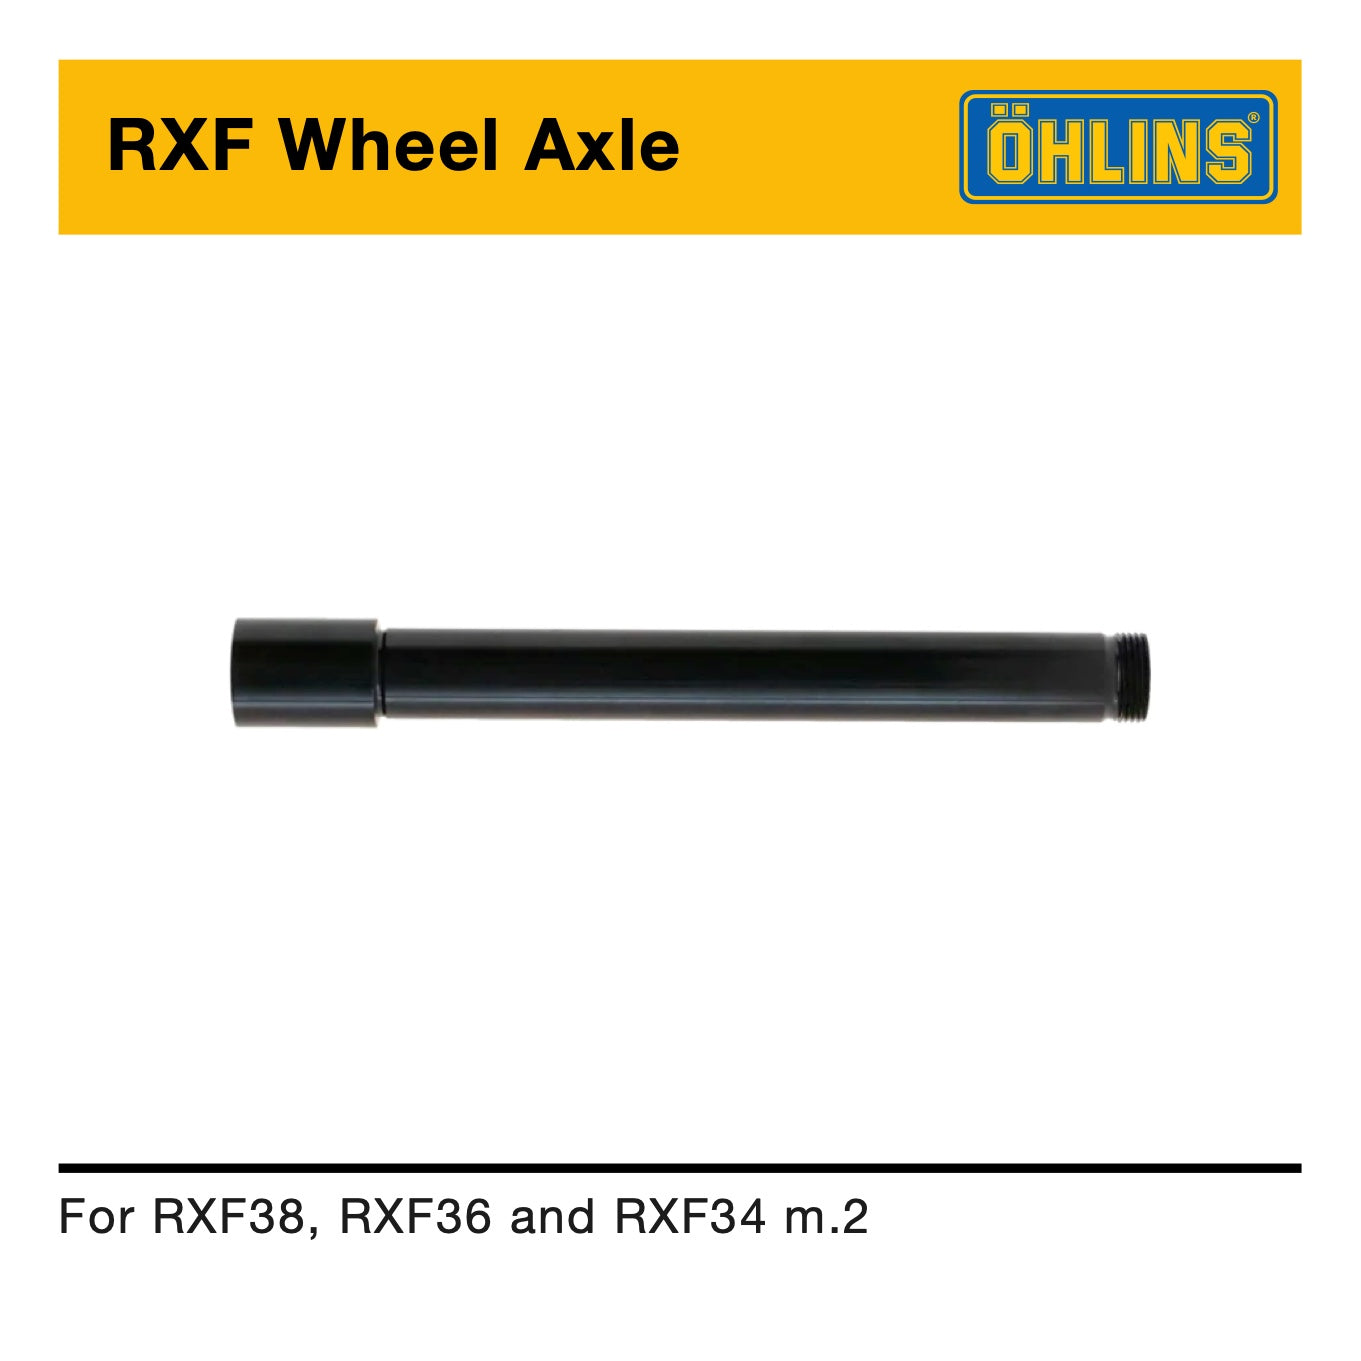 Öhlins RXF38/36 & 34 m.2 Wheel Axle